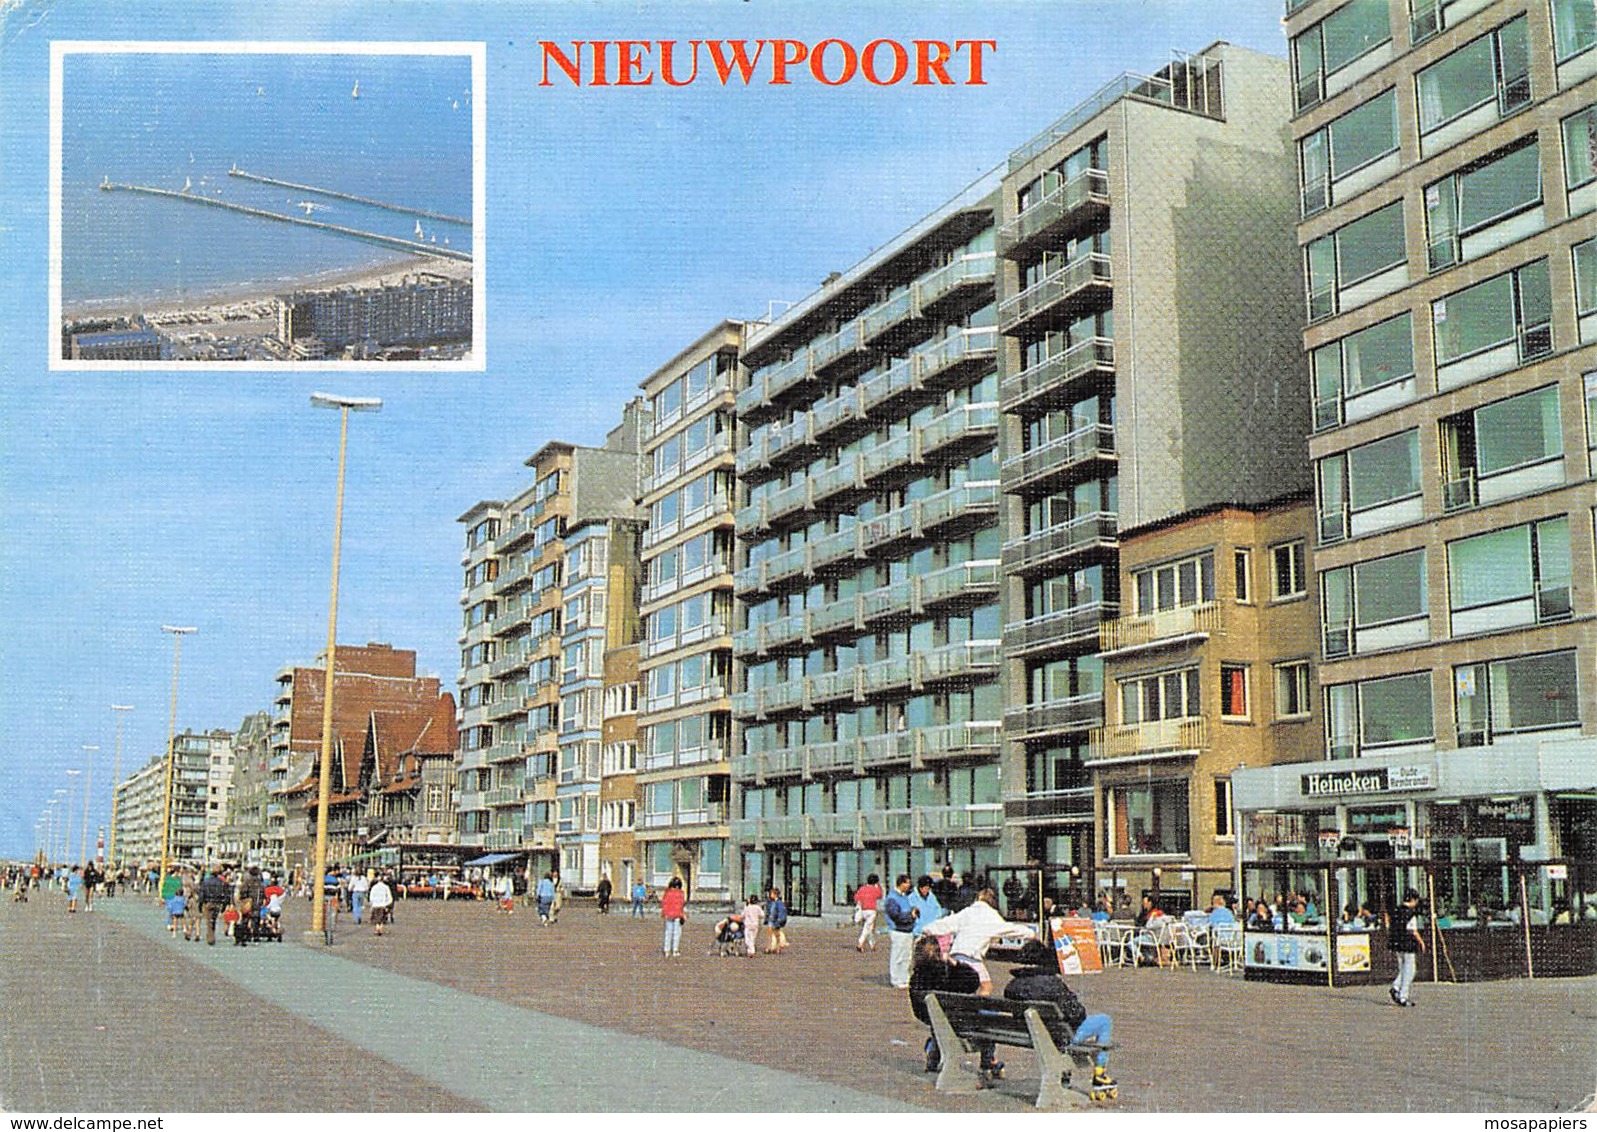 Nieuport - Nieuwpoort